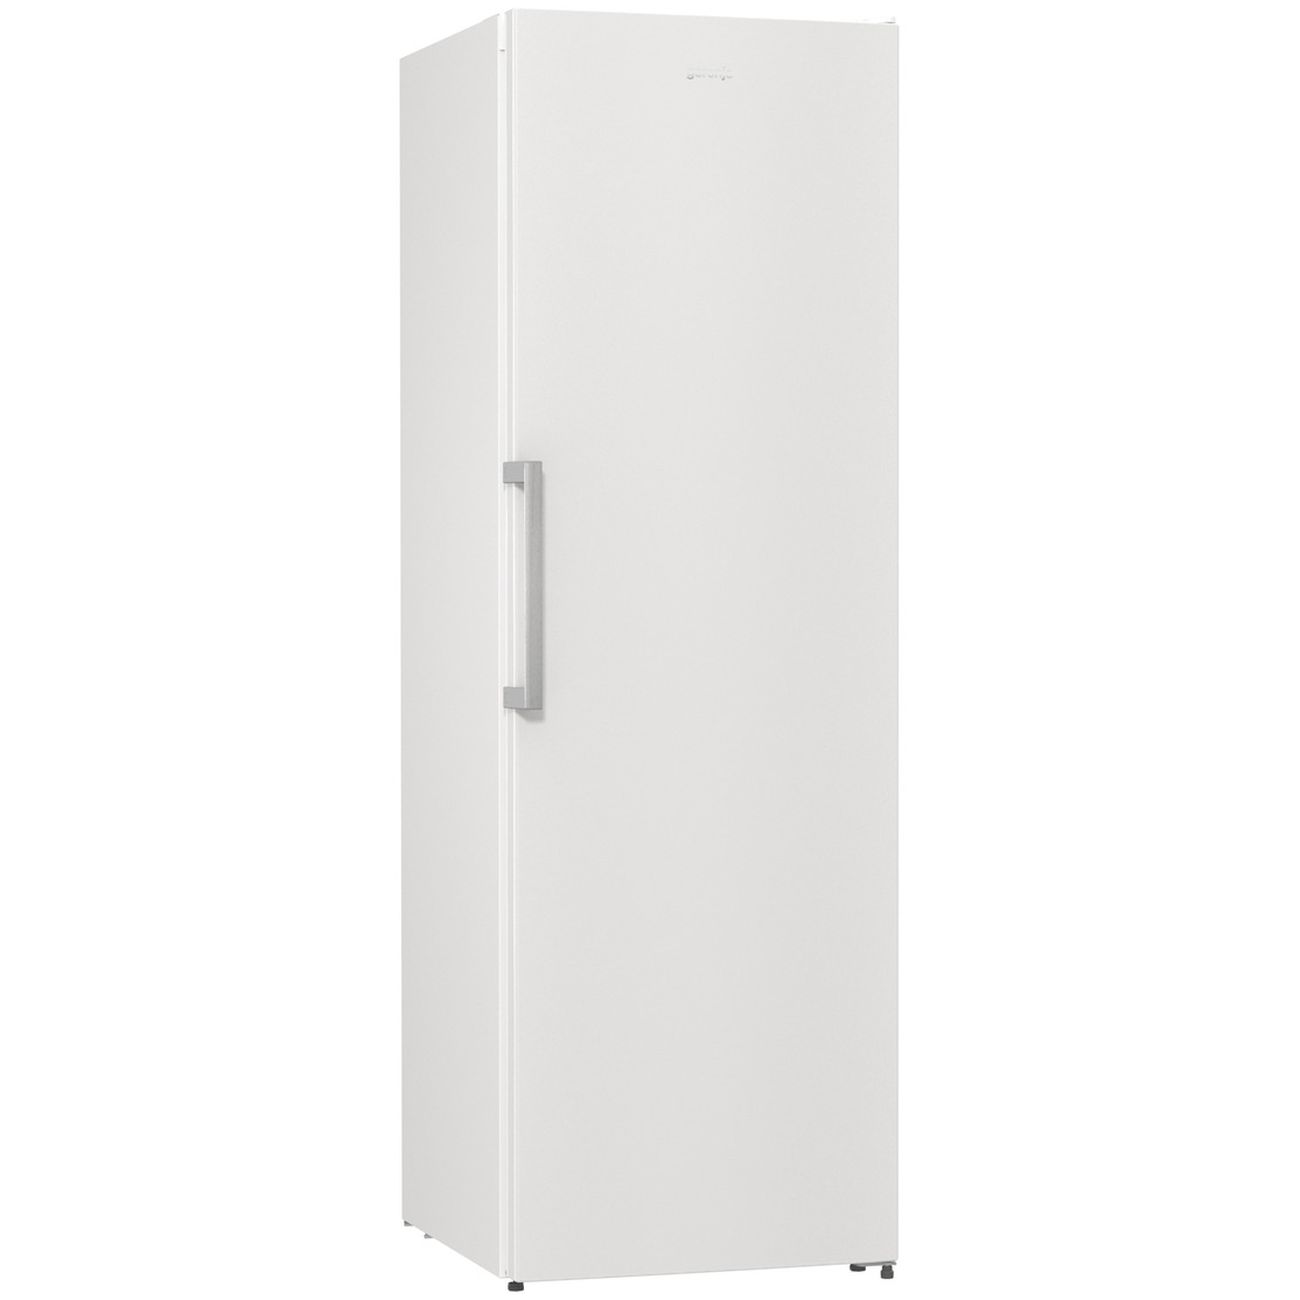 Однокамерный холодильник Scandilux r711y02 w